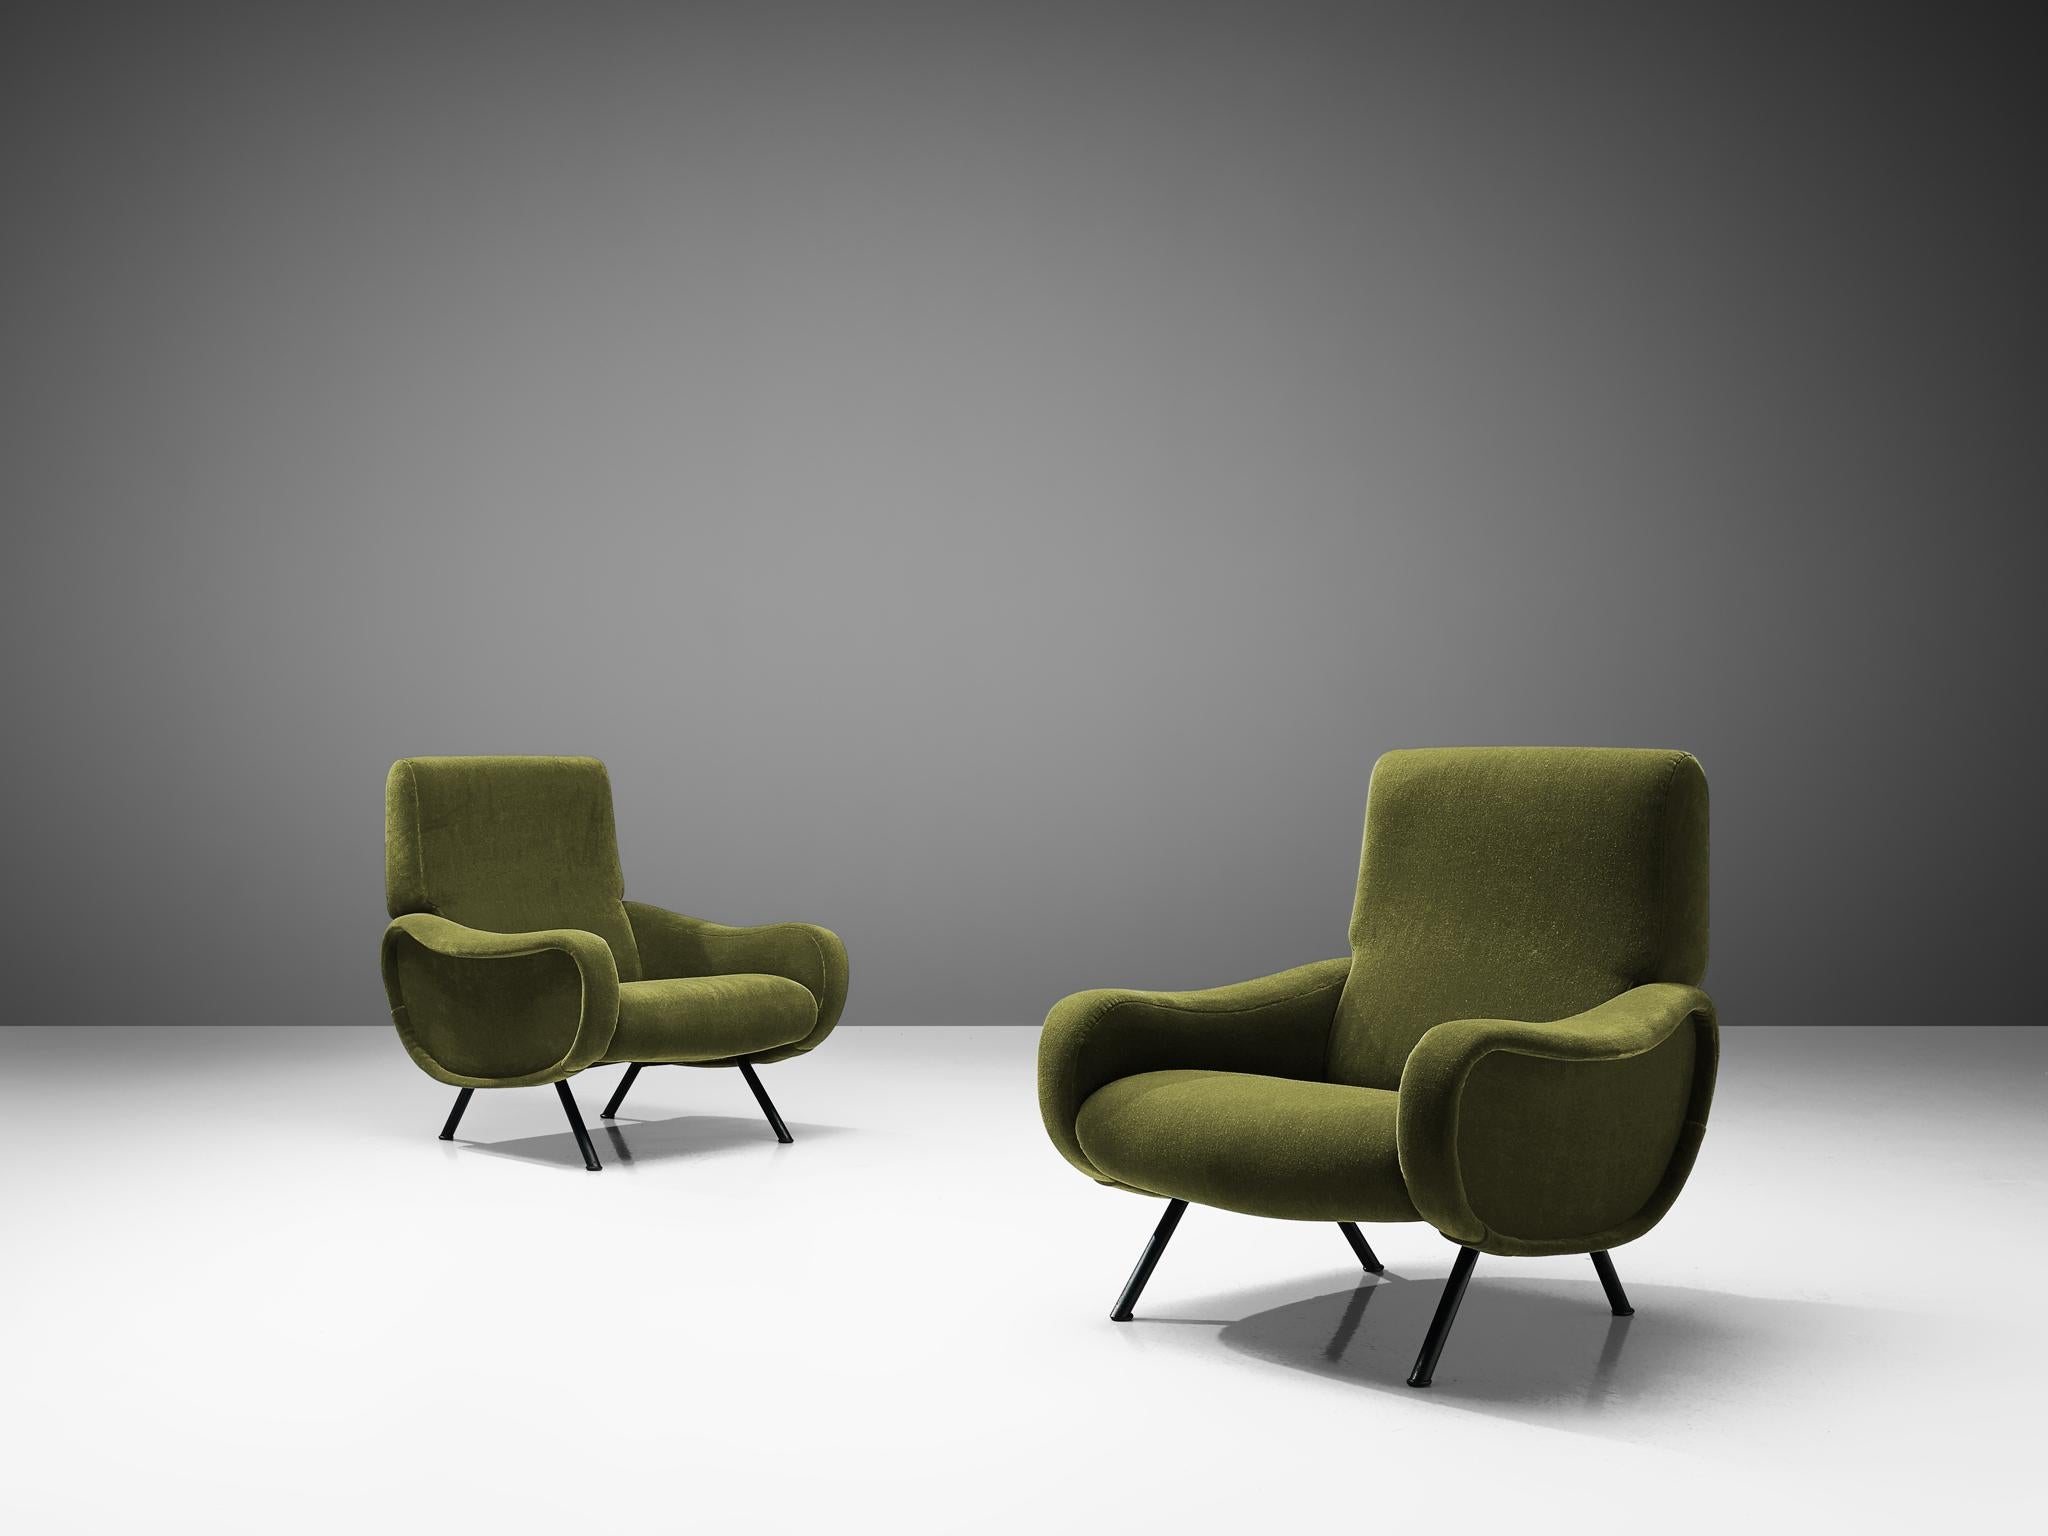 Marco Zanuso für Arflex, Paar Sessel, Stoff, Metall, Italien, 1951

Als Inbegriff des italienischen Designs der 1950er Jahre ist der Sessel Lady